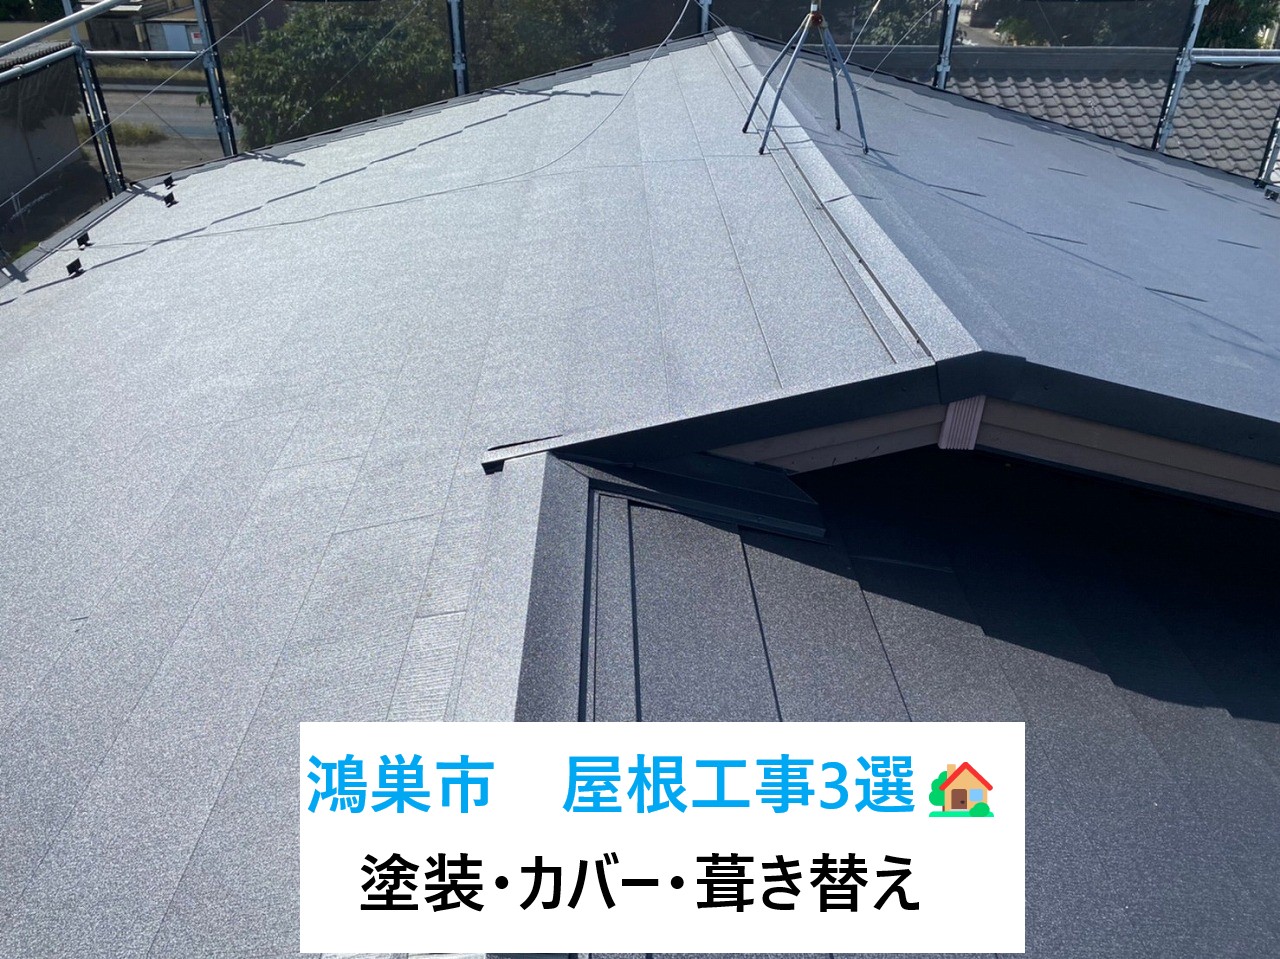 鴻巣市で屋根工事を検討中の方へ・・実施工事例3選をご紹介いたします🏡